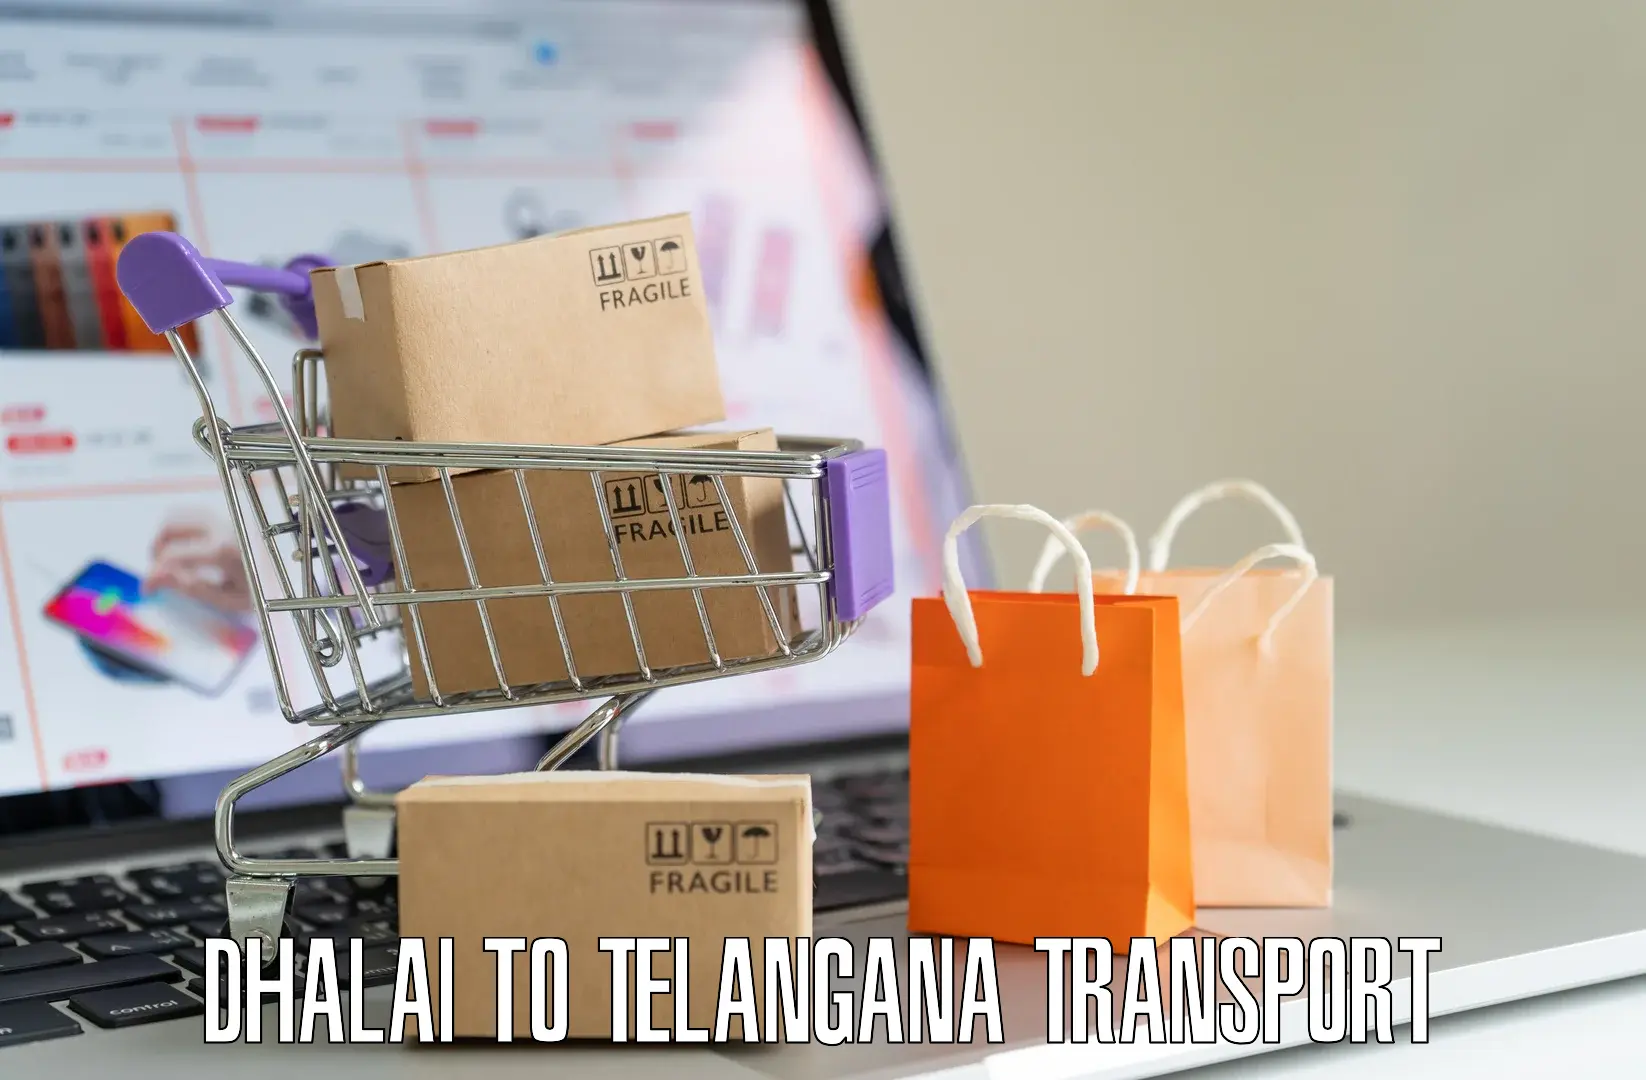 Daily transport service Dhalai to Warangal